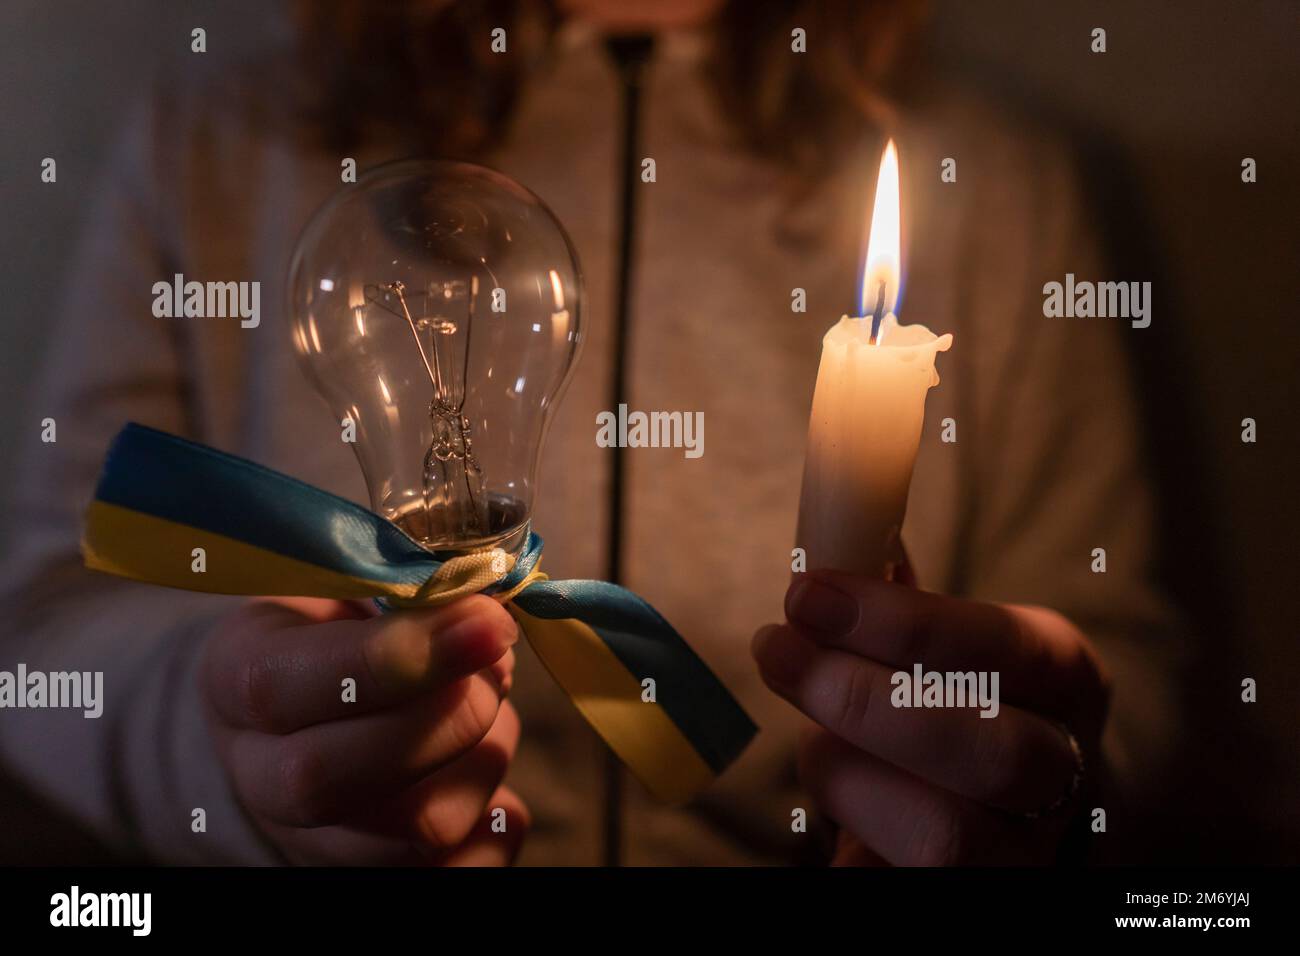 Stromausfall. Stromausfallkonzept. Mädchen hält eine brennende Kerze und eine elektrische Glühbirne mit einem gelb-blauen Band (nationales Symbol der Ukraine) Stockfoto